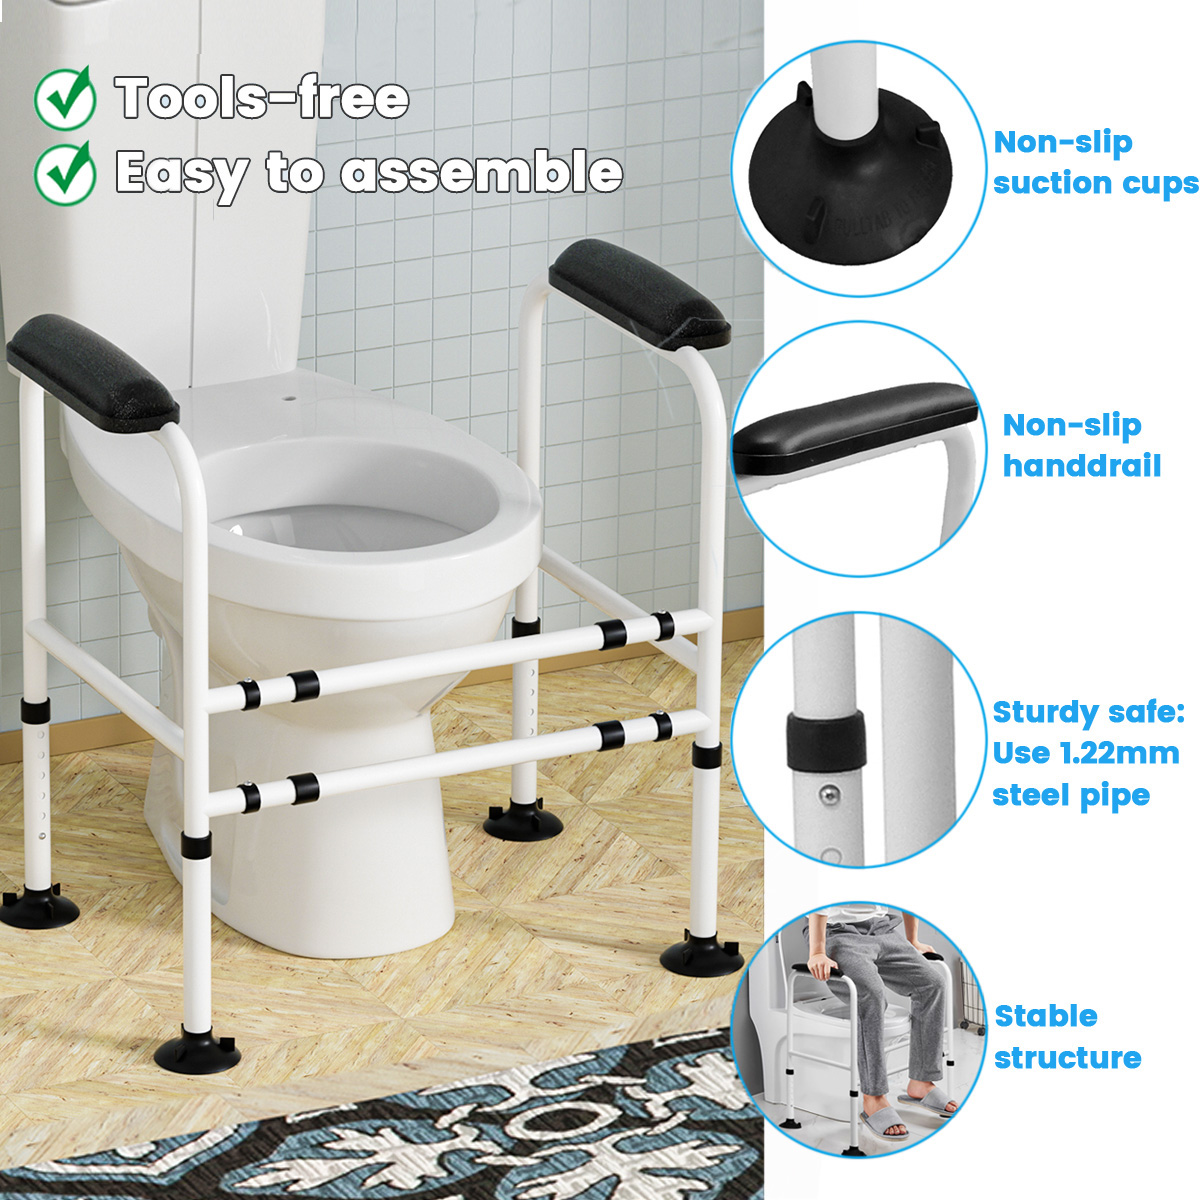 Adjustable-Toilet-Safety-Frame-Hand-Rail-Grab-Bar-Support-for-Elderly-Bathroom-1940089-5